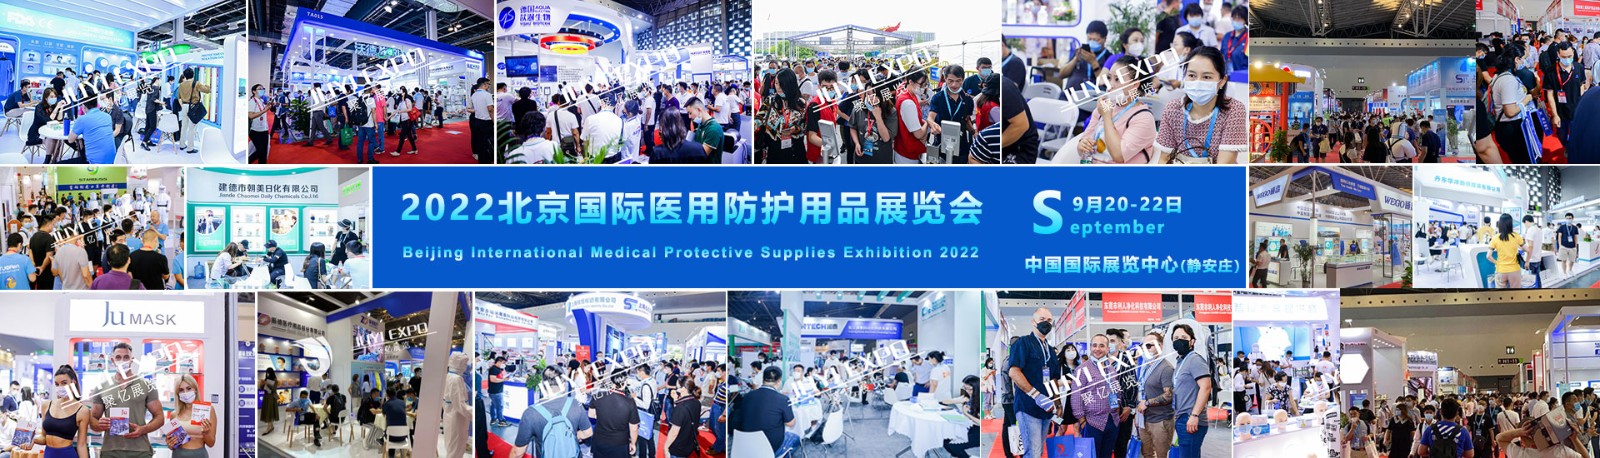 2022北京国际医用防护用品展览会.jpg